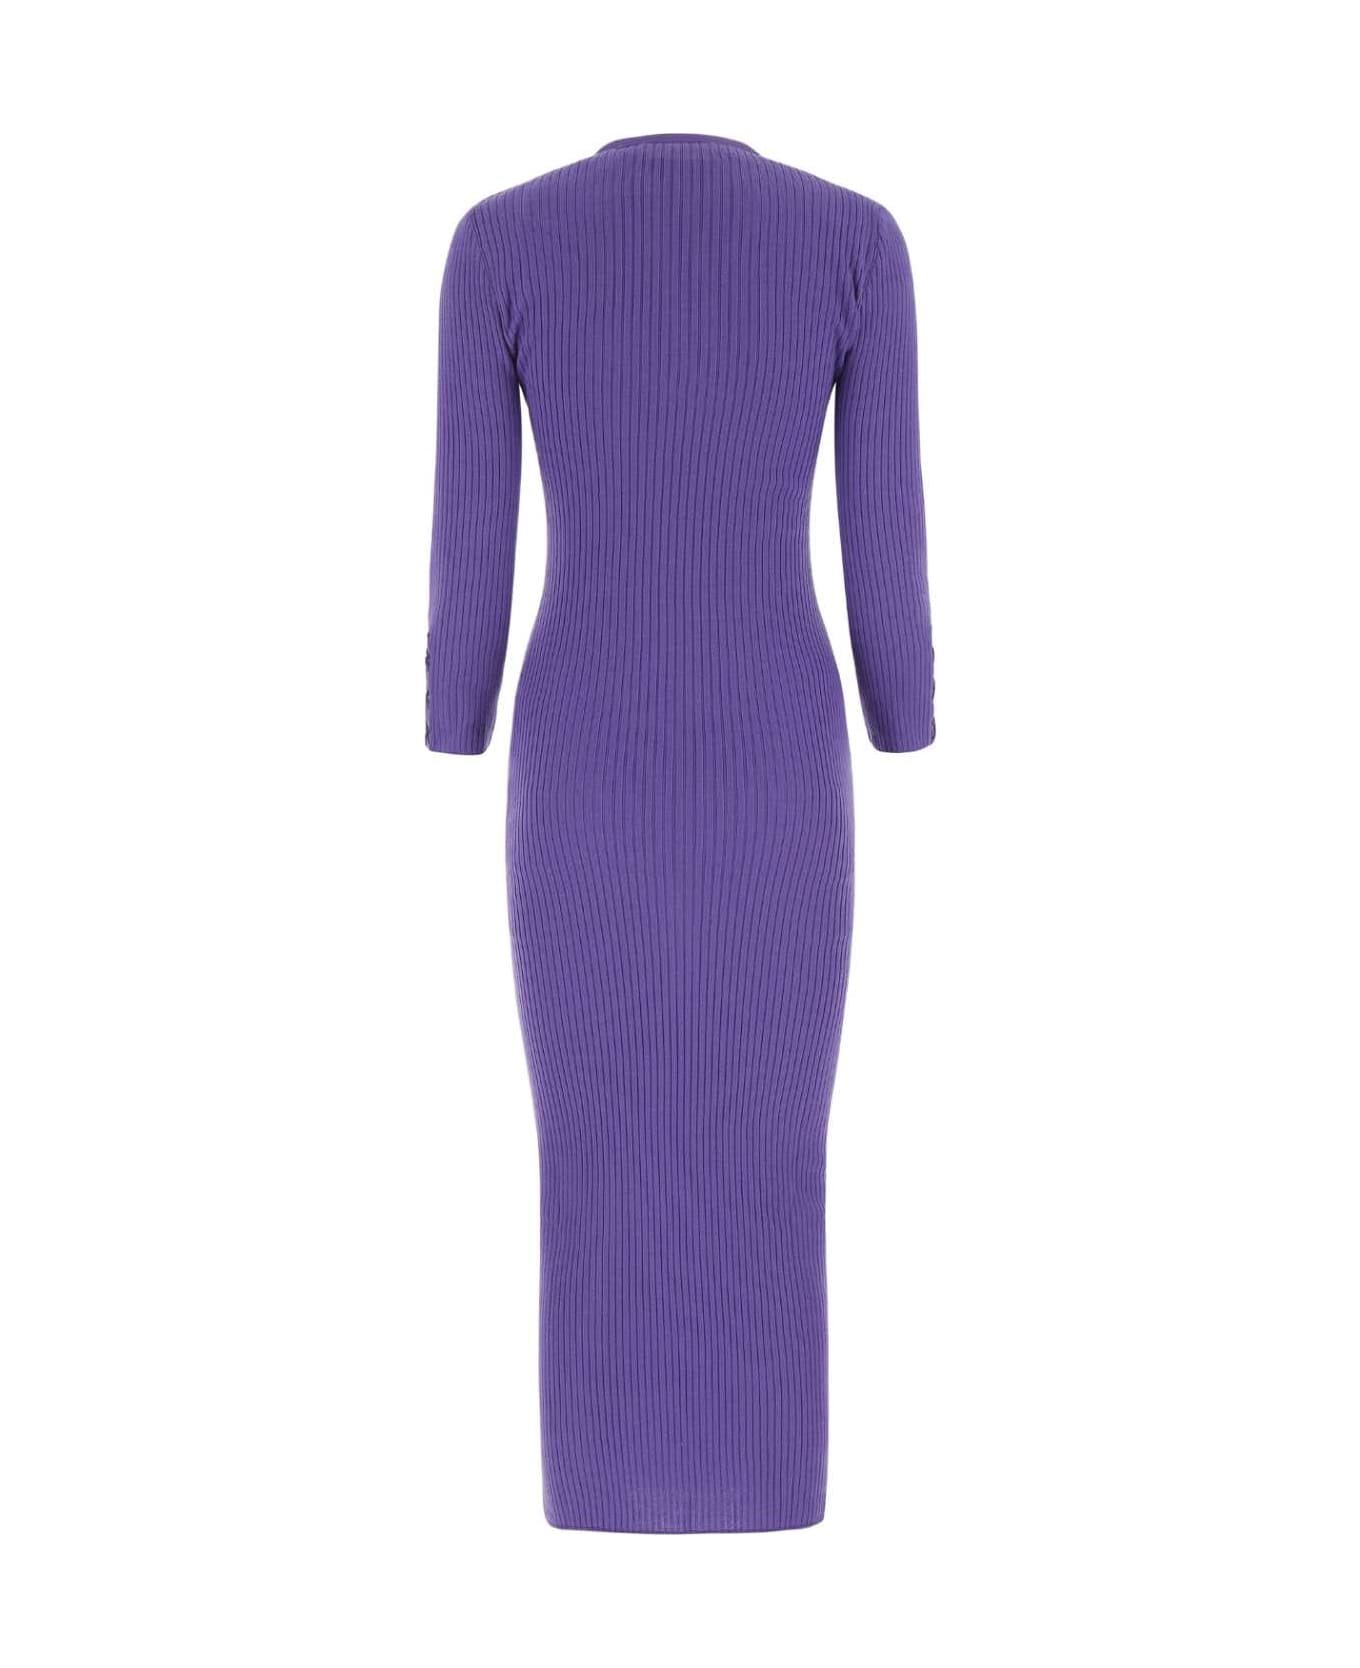 Moschino Purple Wool Dress - 0278